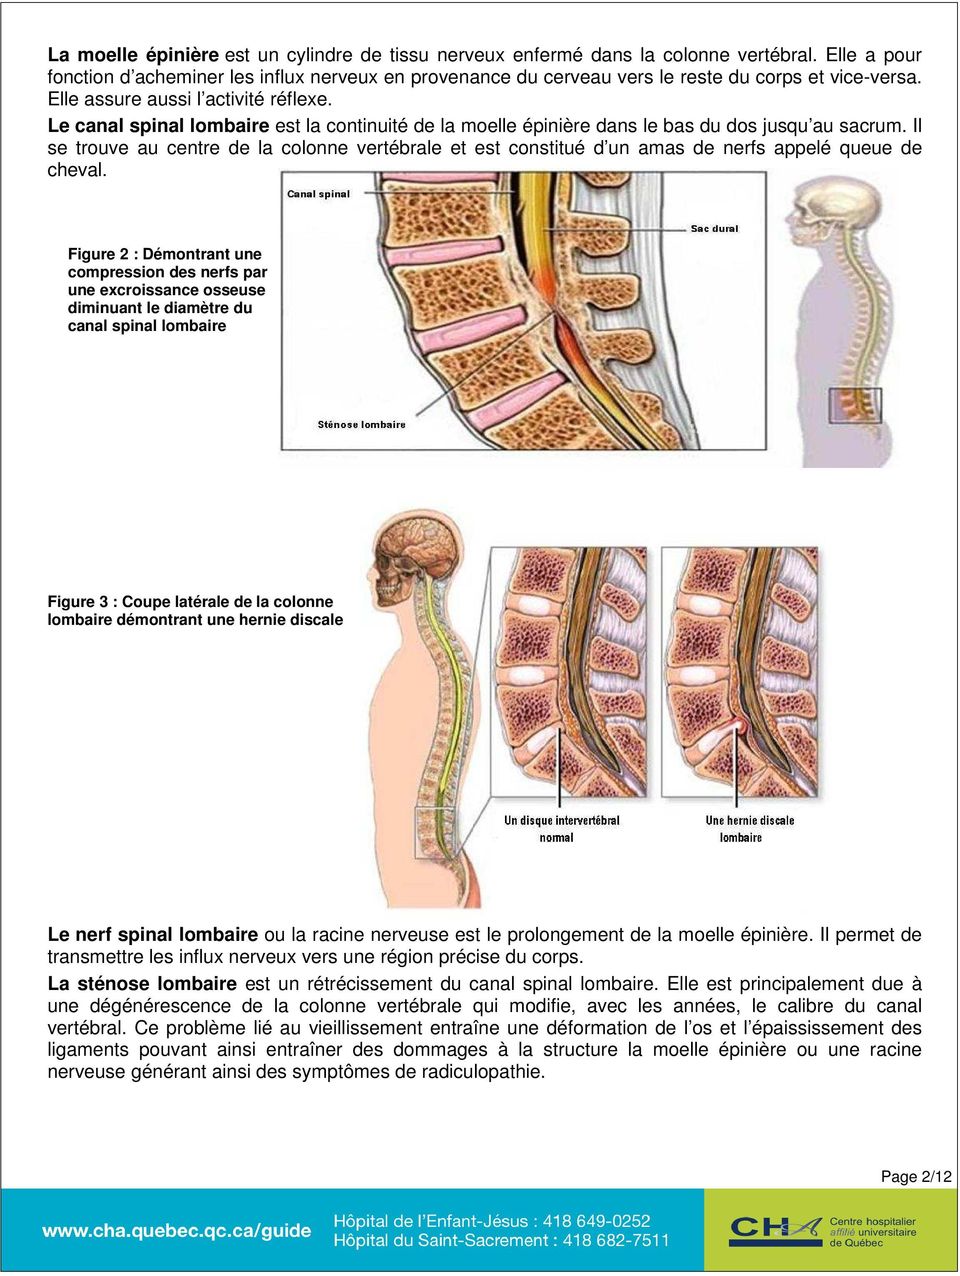 Le canal spinal lombaire est la continuité de la moelle épinière dans le bas du dos jusqu au sacrum.